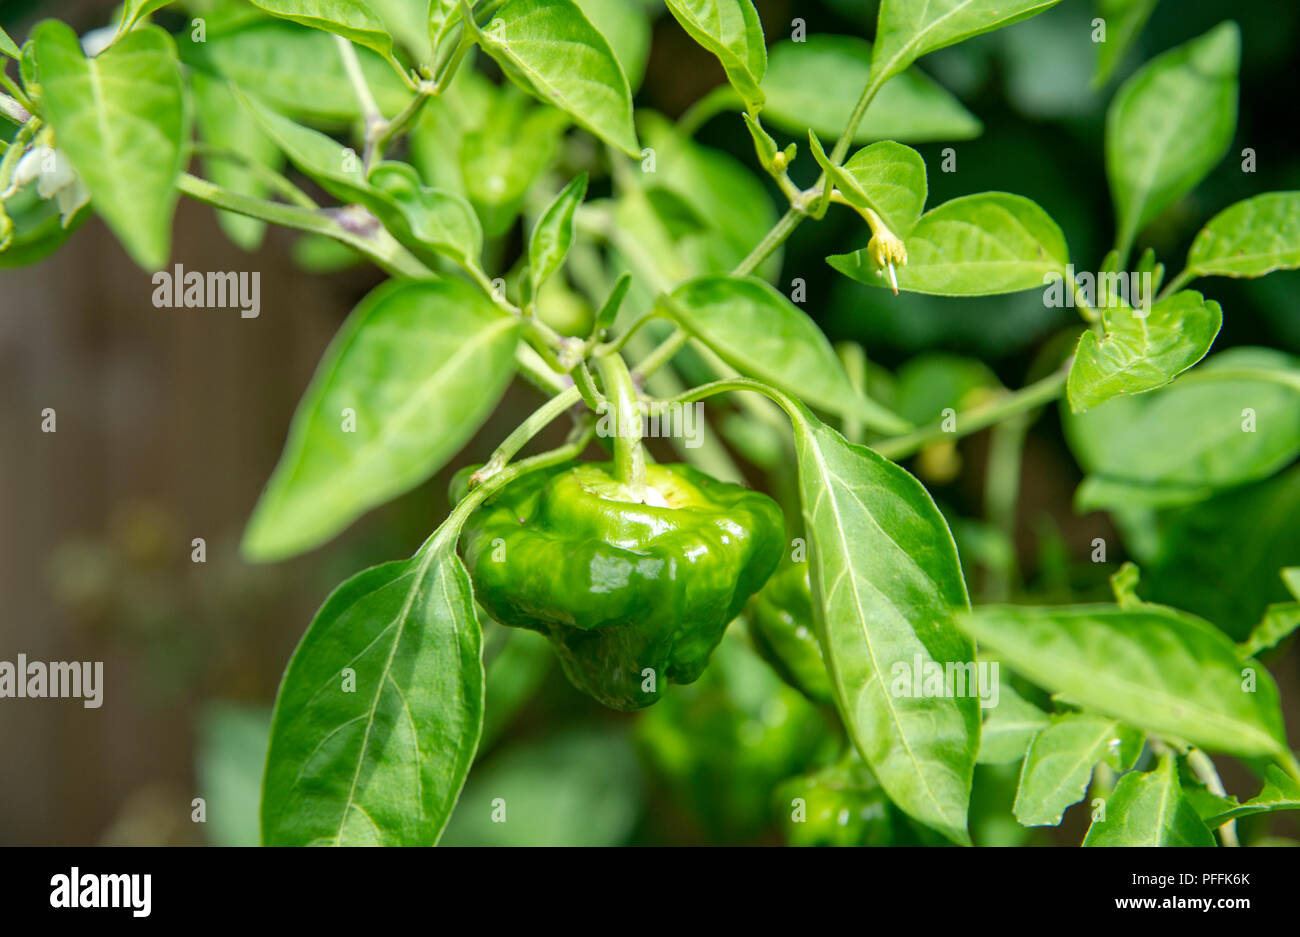 Rot Scotch Bonnet chili Pflanze wachsen im Garten Topf noch Grün als reift  auf den Pflanzen. Für das Kochen mit einem habanero Geschmack verwendet  Stockfotografie - Alamy